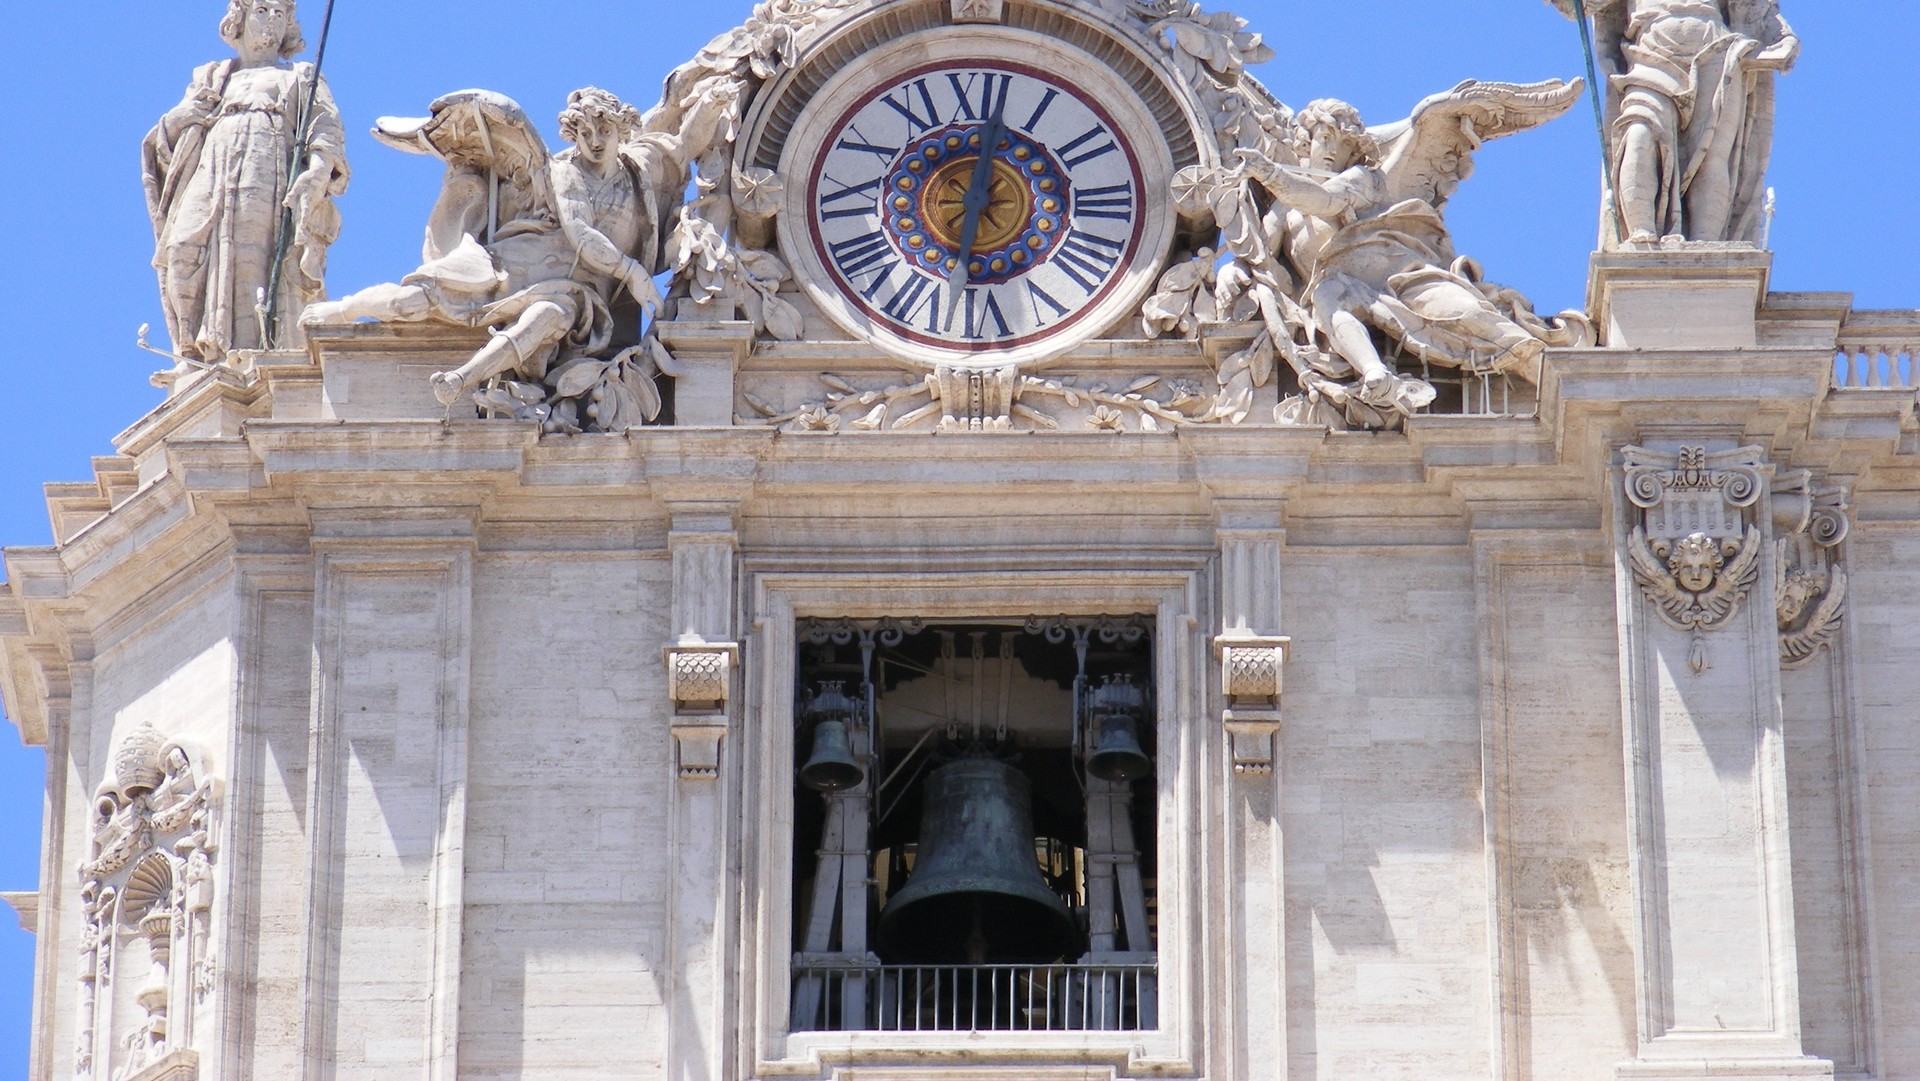 Les cloches de la basilique St-Pierre de Rome (photo wikimedia commons User:Mattes CC BY-SA 3.0)